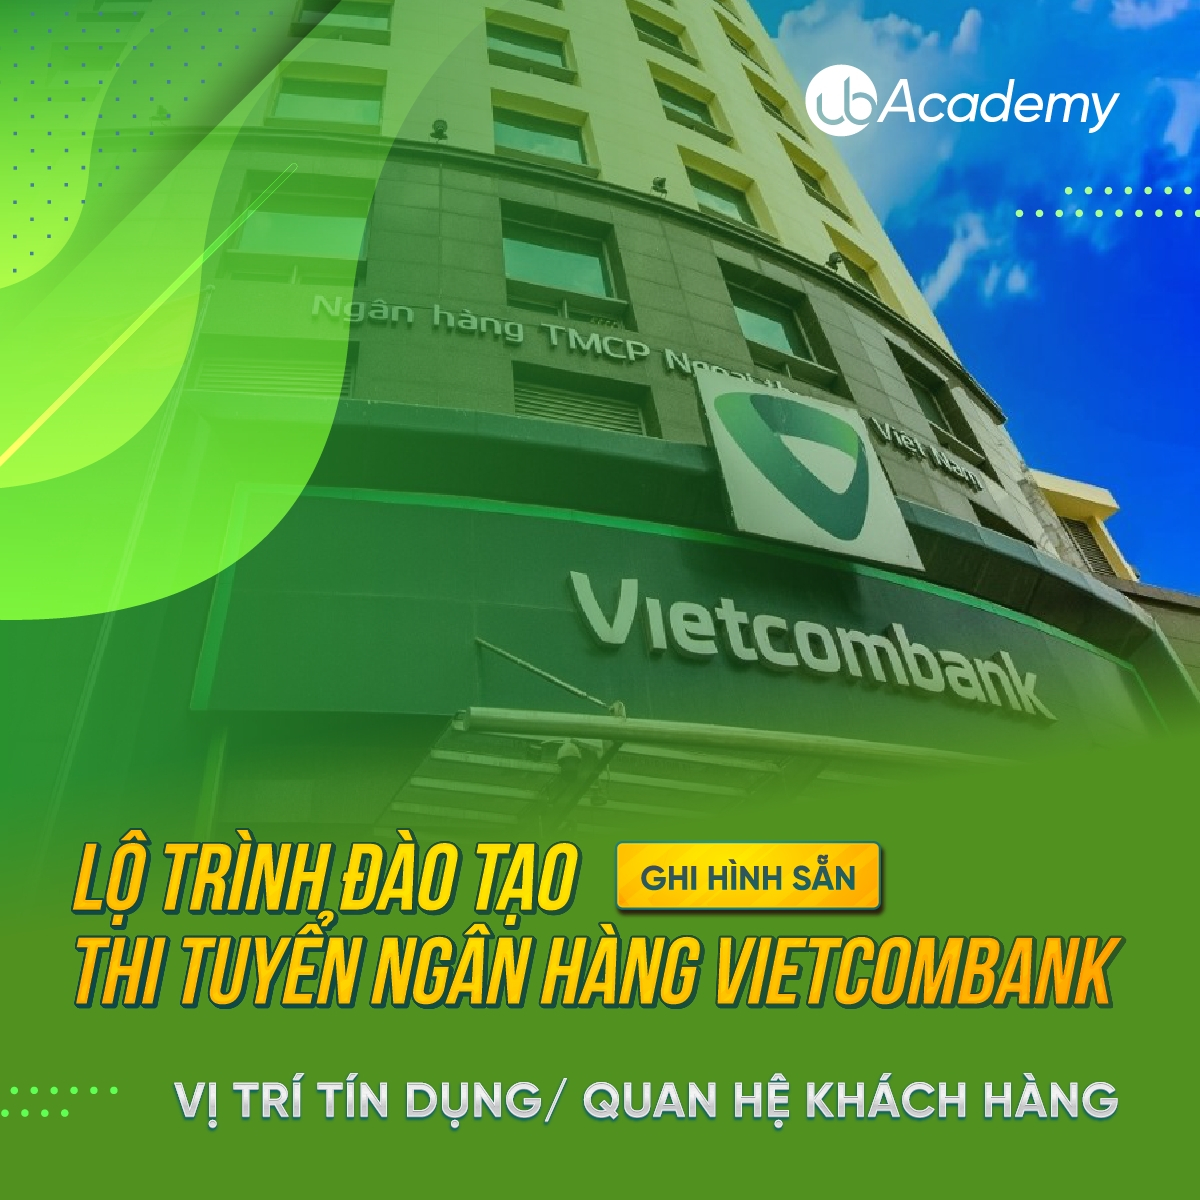 Lộ trình đào tạo thi tuyển Ngân hàng Vietcombank - Vị trí Tín dụng/ Quan hệ Khách hàng - Ghi hình sẵn